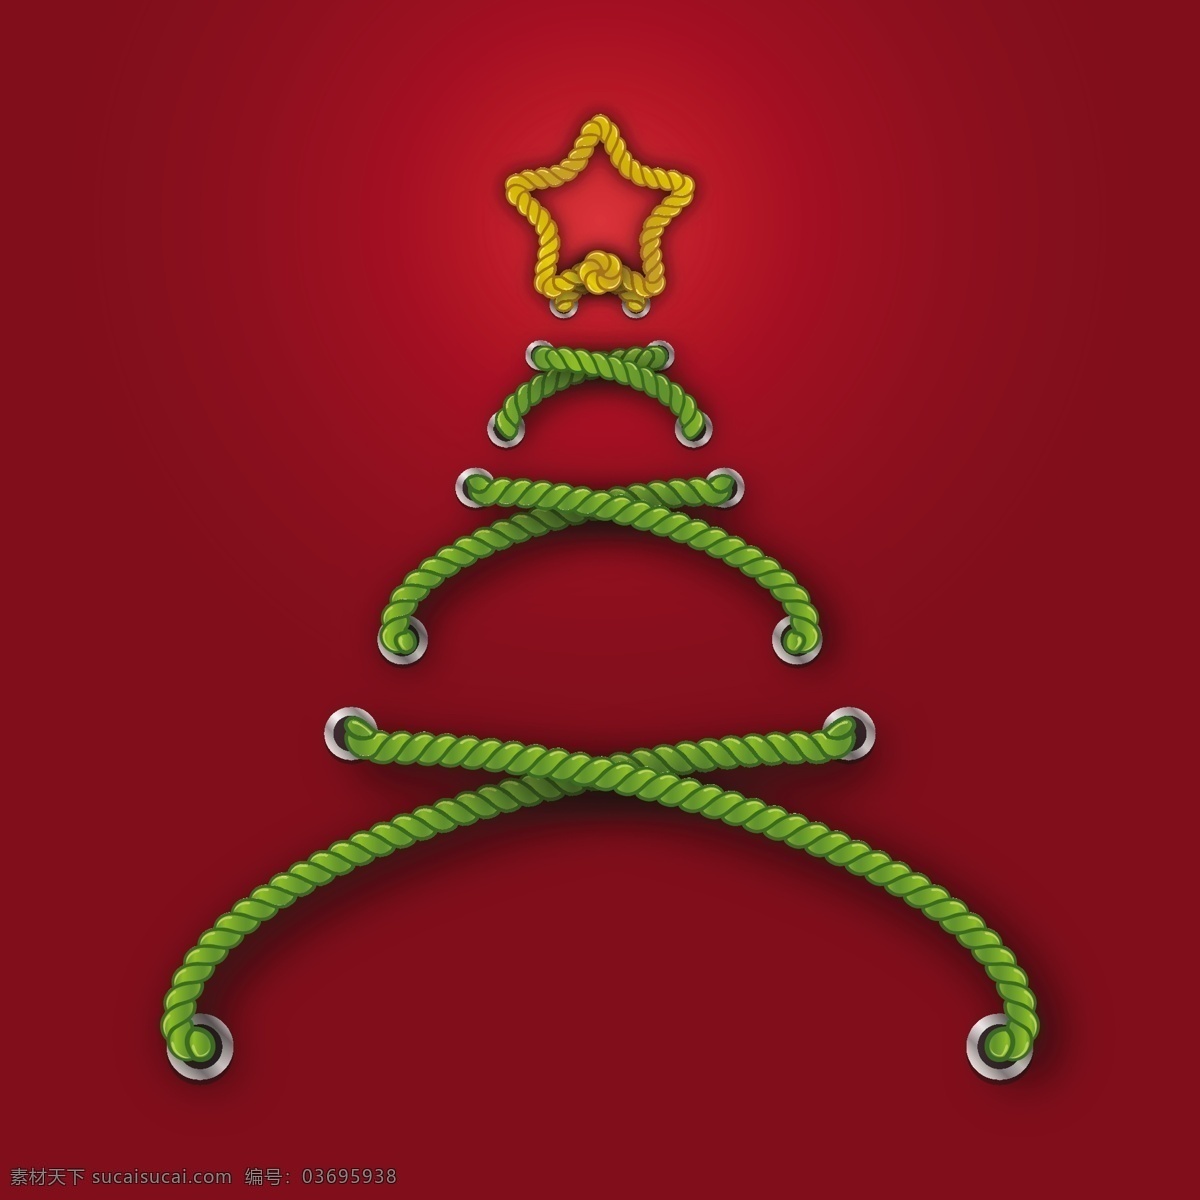 矢量 时尚 创意 个性 圣诞树 图形 圣诞节 矢量素材 节日素材